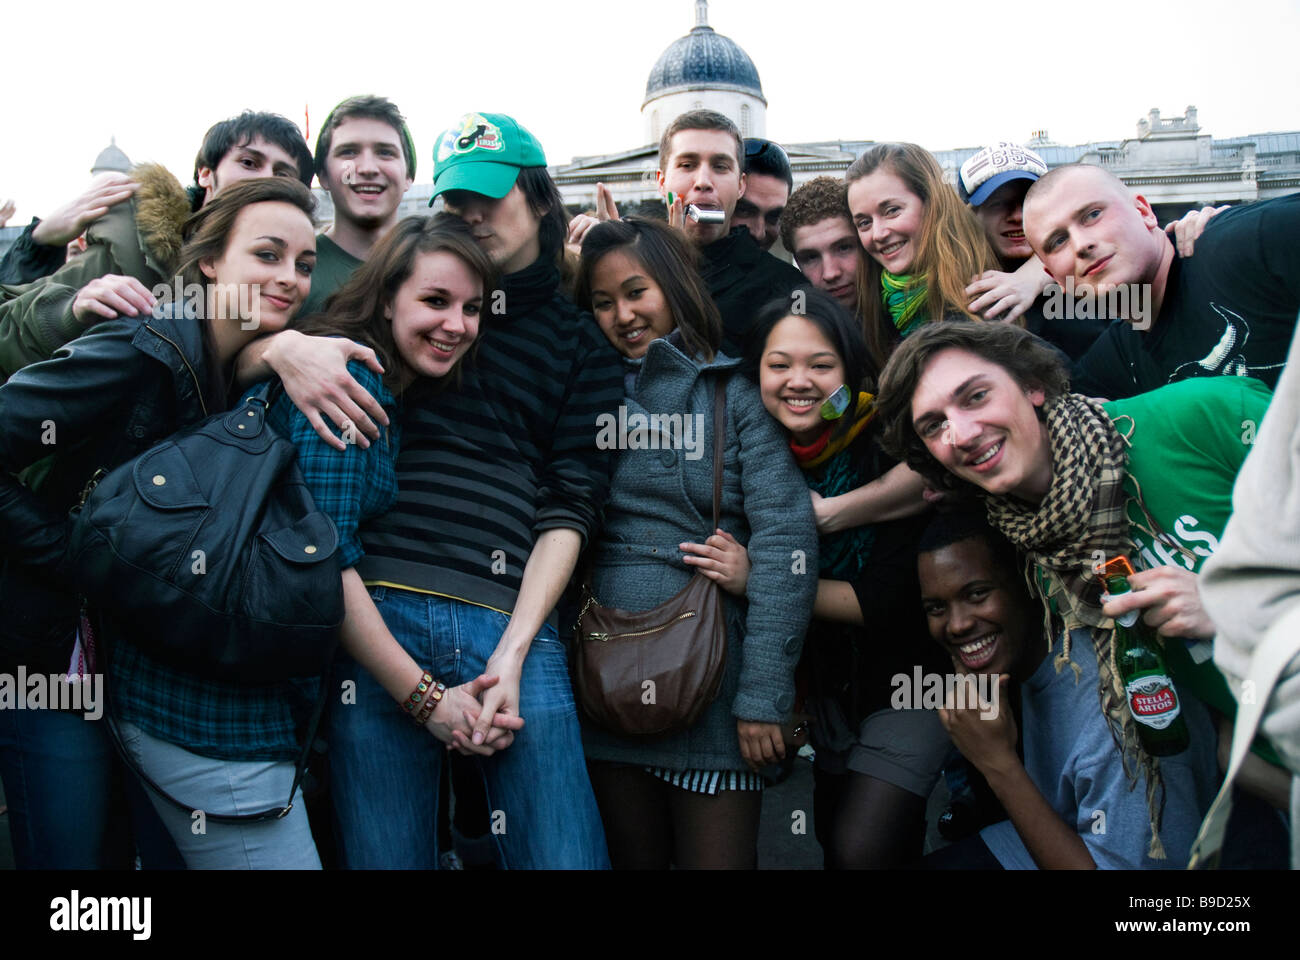 Gruppe von multikulturellen junge Männer und Frauen feiern am St. Patricks Day Feier auf dem Trafalgar Square. Stockfoto